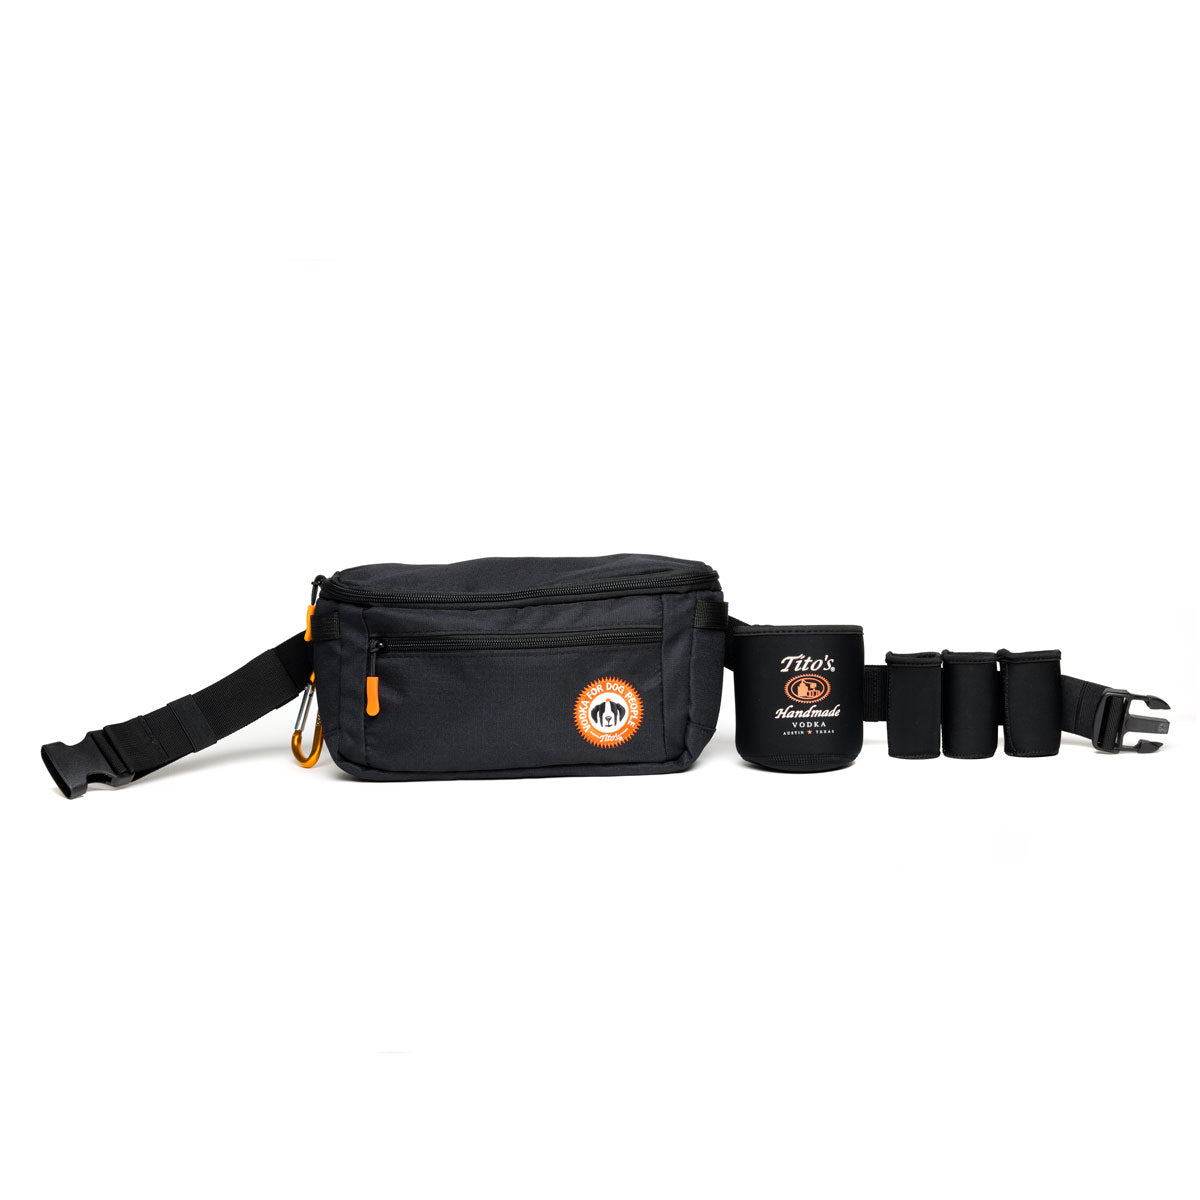 Black adjustable zippered utility belt bag with carabiner, Vodka for Dog People logo, pocket with Tito's Handmade Vodka logo, 3 50ml bottle pockets